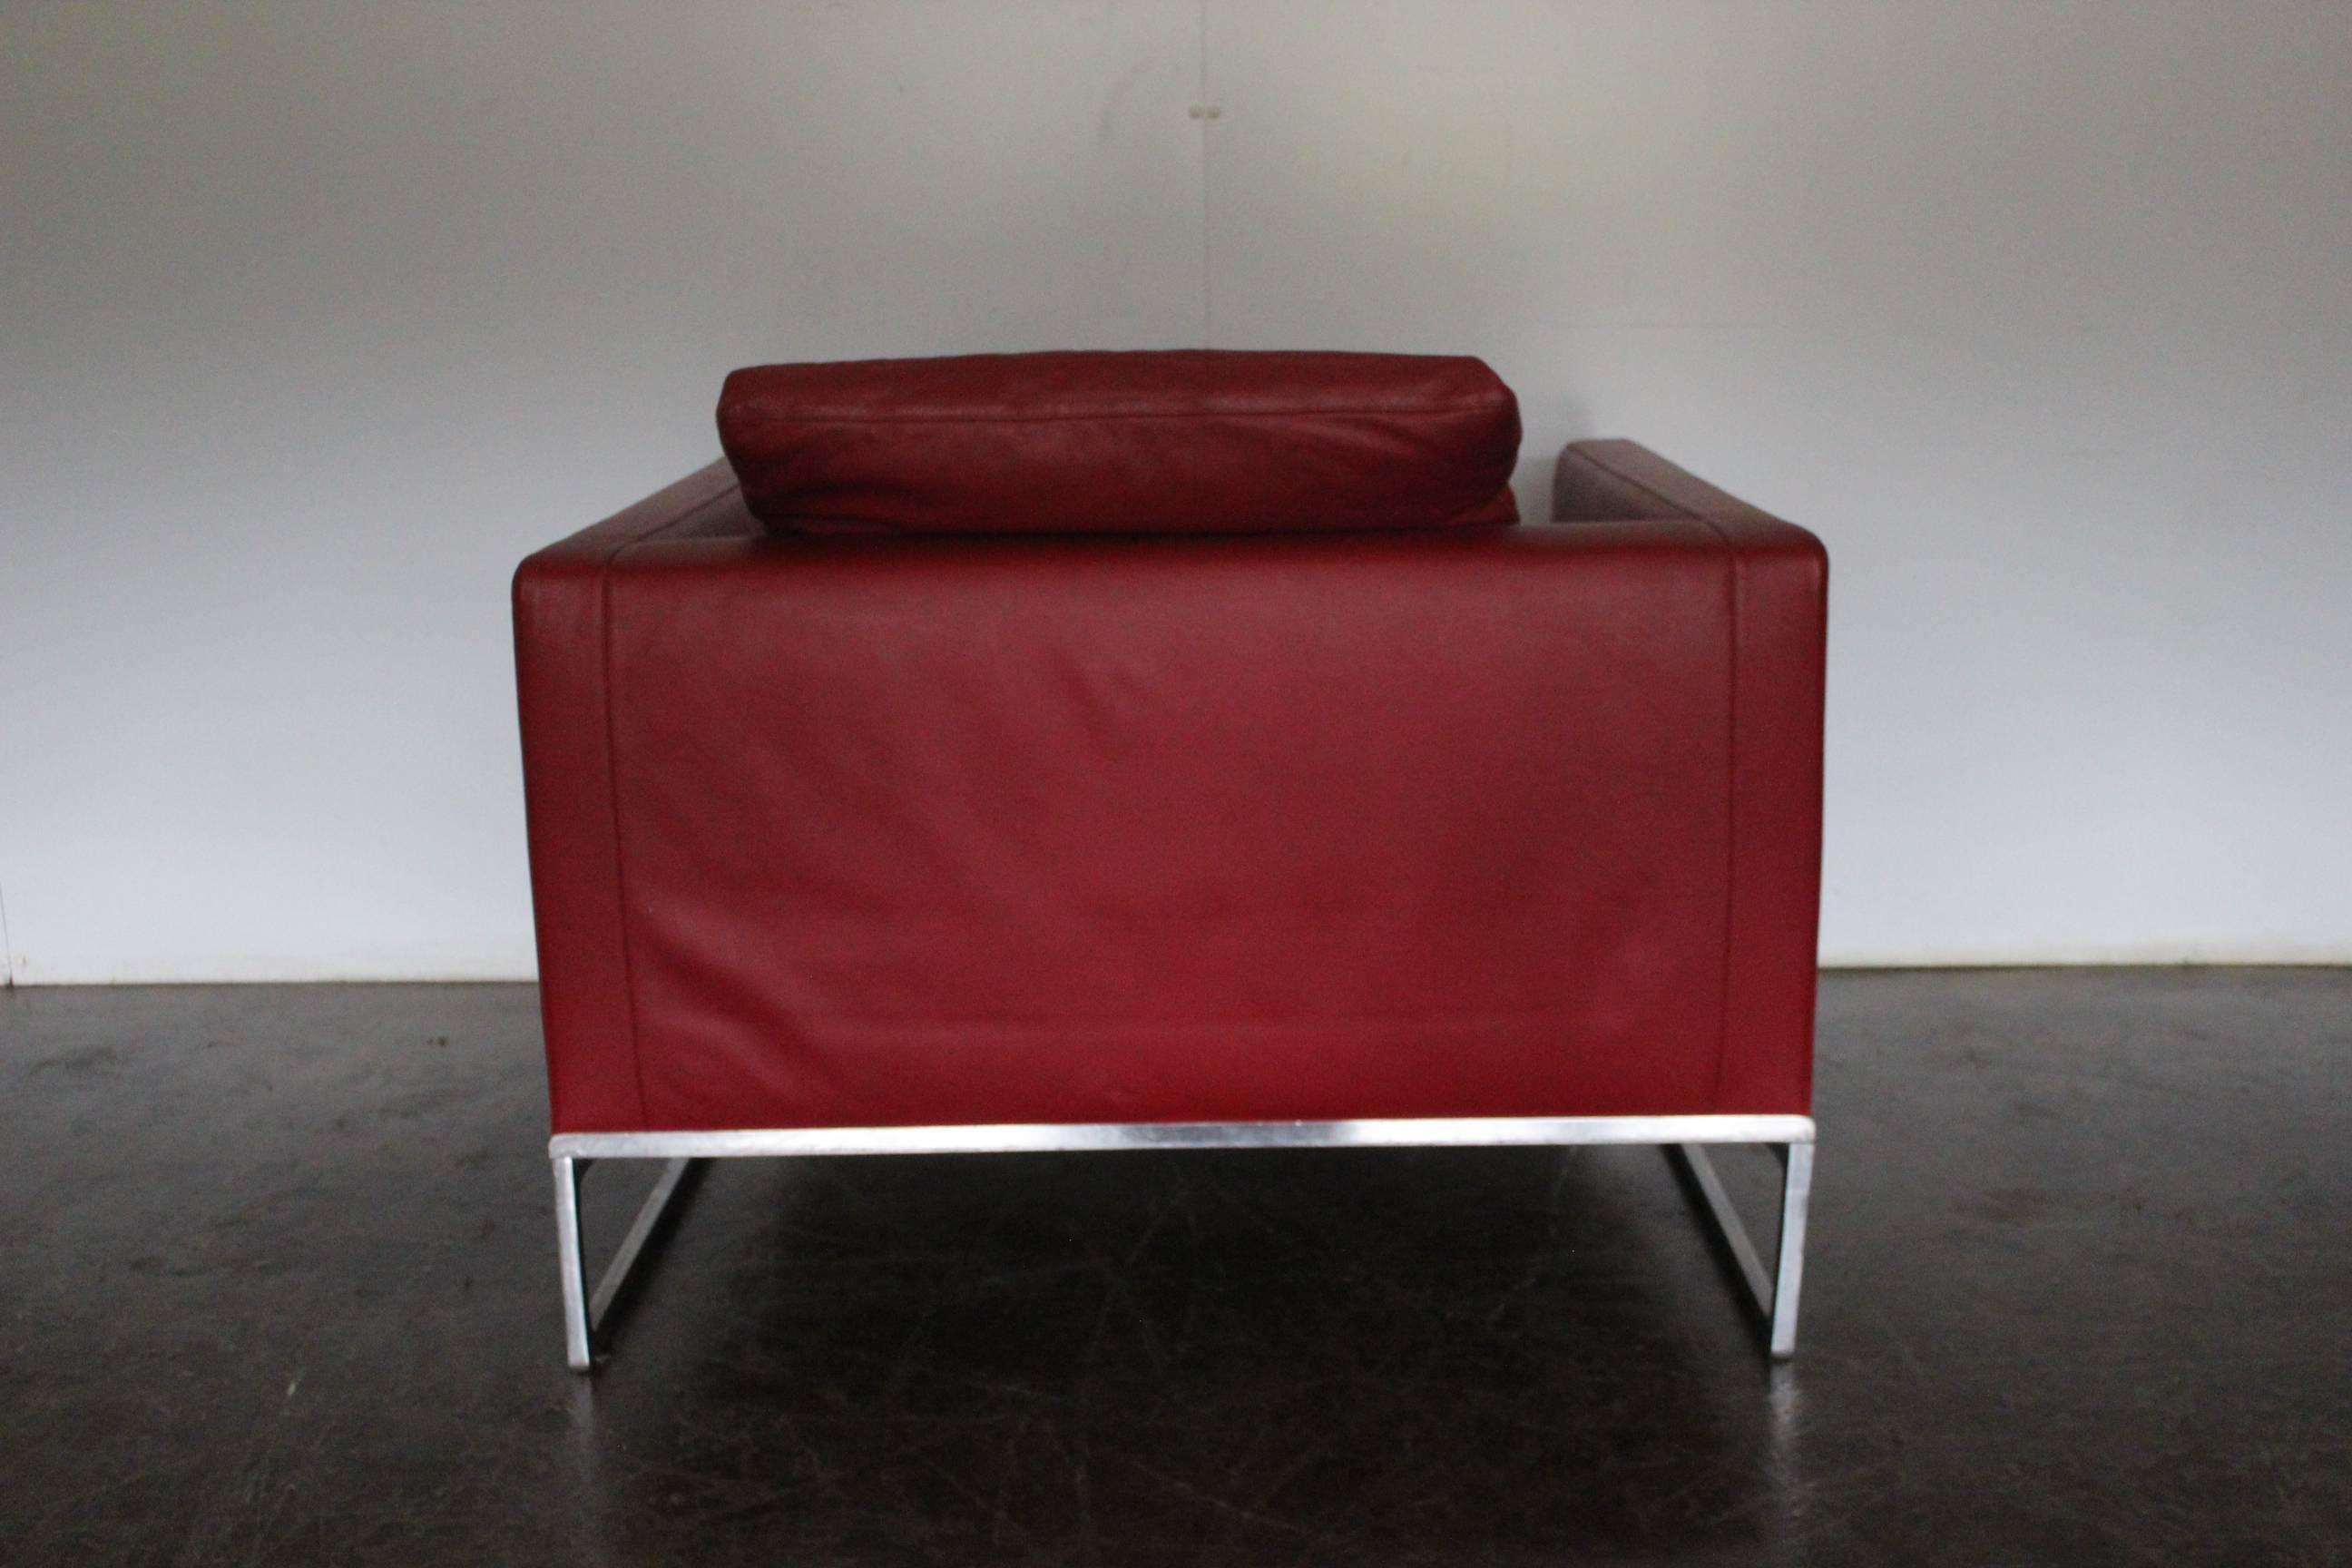 Italian B&B Italia “Tight” Large Armchair in “Gamma” Red Leather